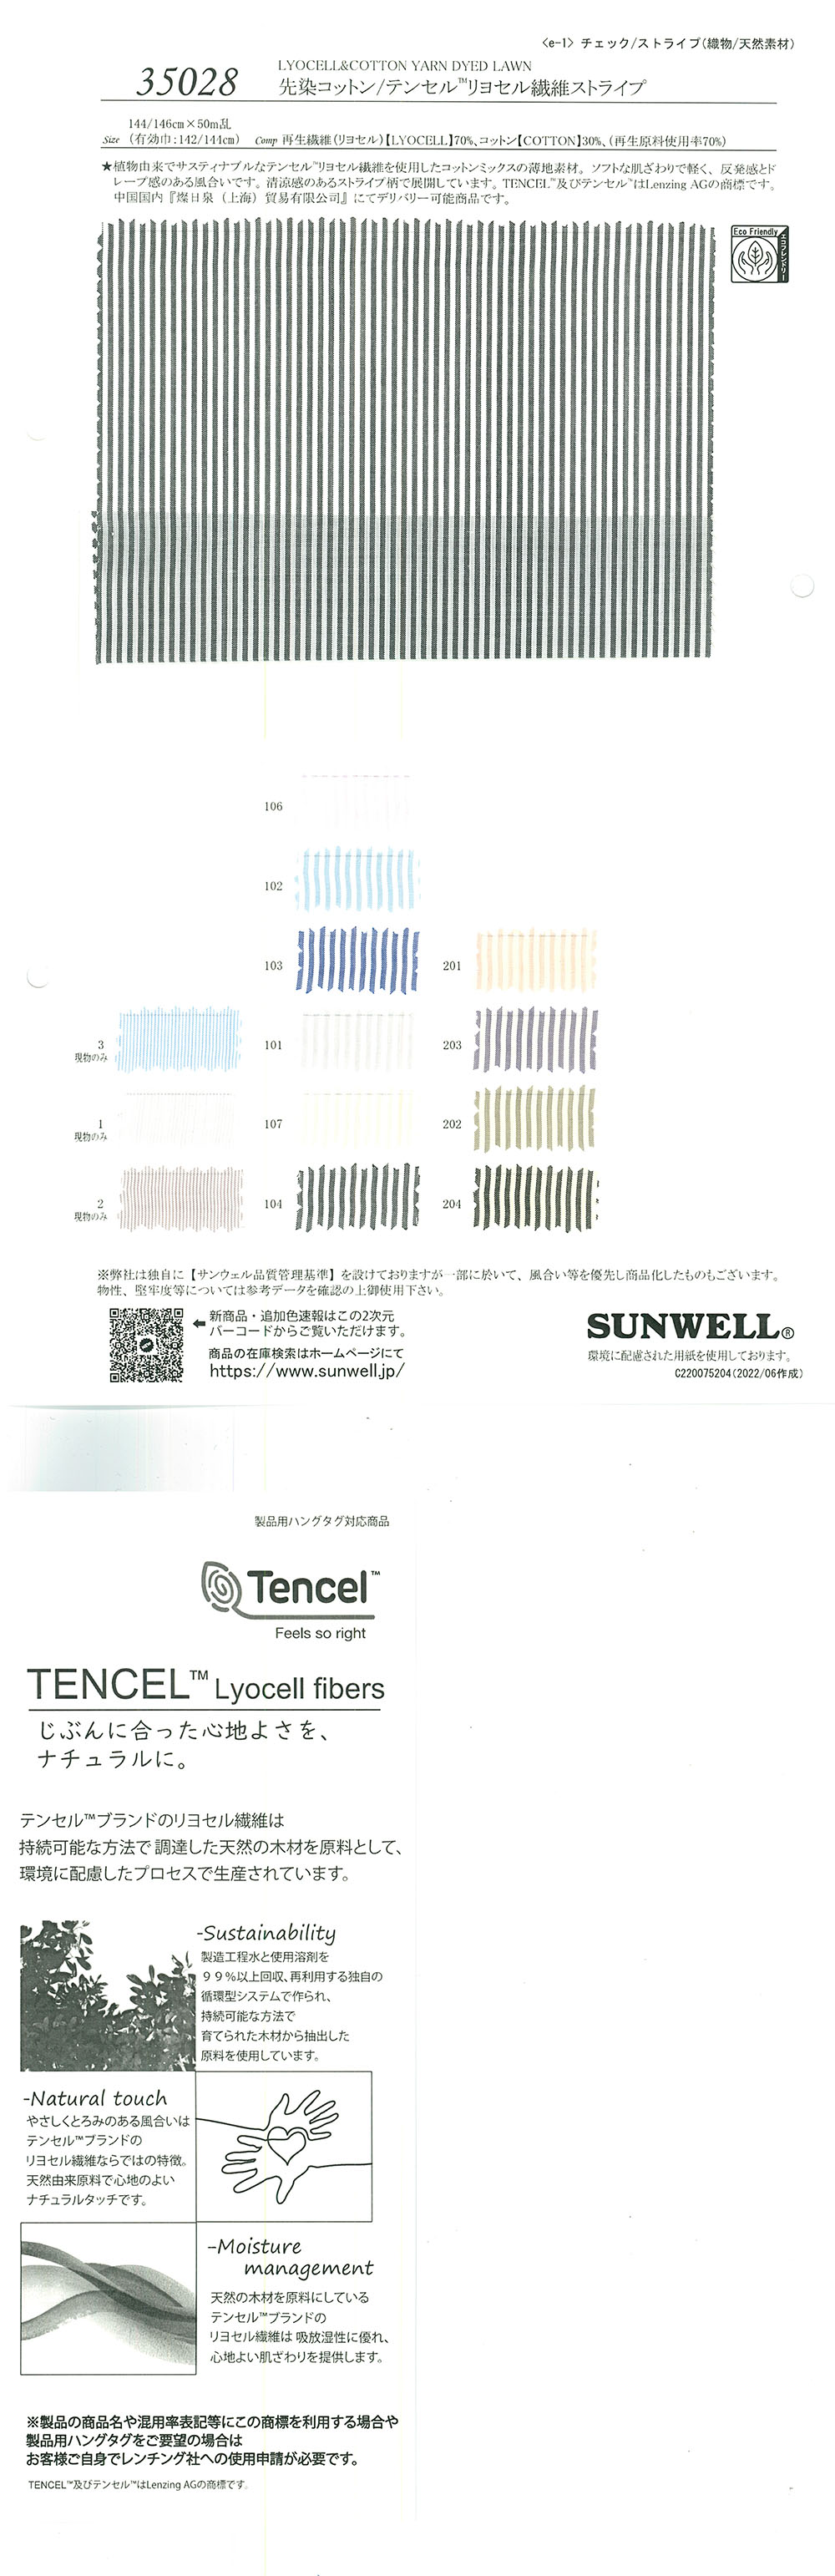 35028 Faixa De Fibra De Liocel De Algodão/Tencel(TM) Tingida Com Fio[Têxtil / Tecido] SUNWELL